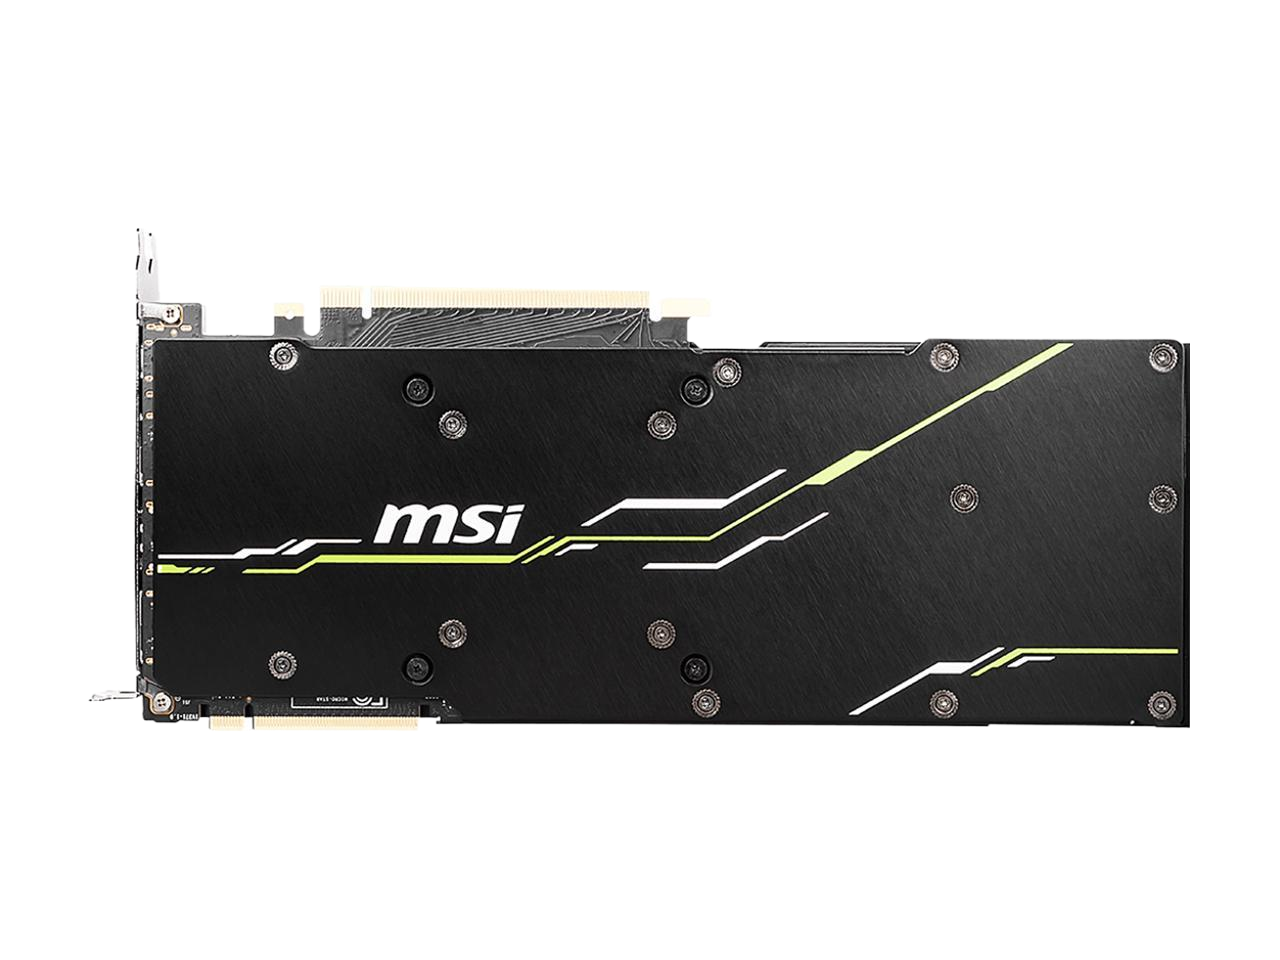 MSI GeForce RTX 2080 Ti VENTUS GP OC 11GB DirectX 12 352-Bit GDDR6 PCI Express 3.0 x16 SLI Support Video Card